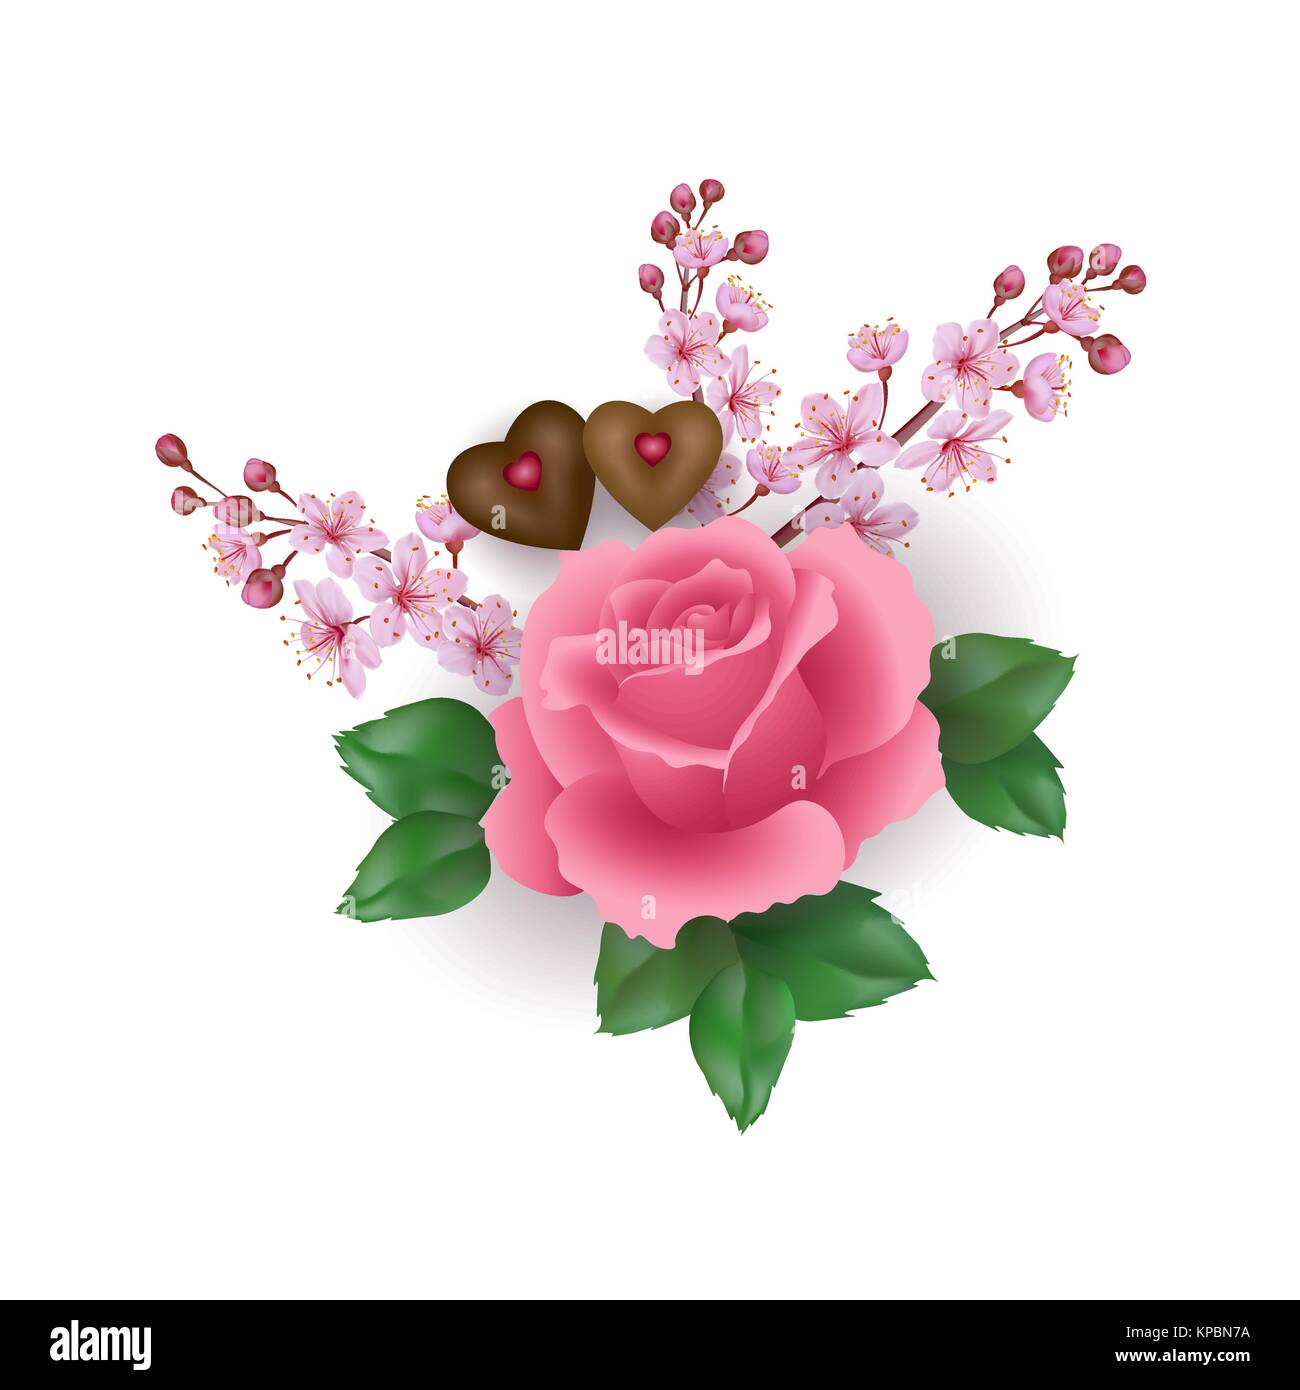 Realistische Valentinstag set pink rose Schokolade Blume. Licht cherry Sakura spring blossom Herzform candy romantisches Geschenk Datum vorhanden Liebe. 3D-Vektor illustration Stock Vektor